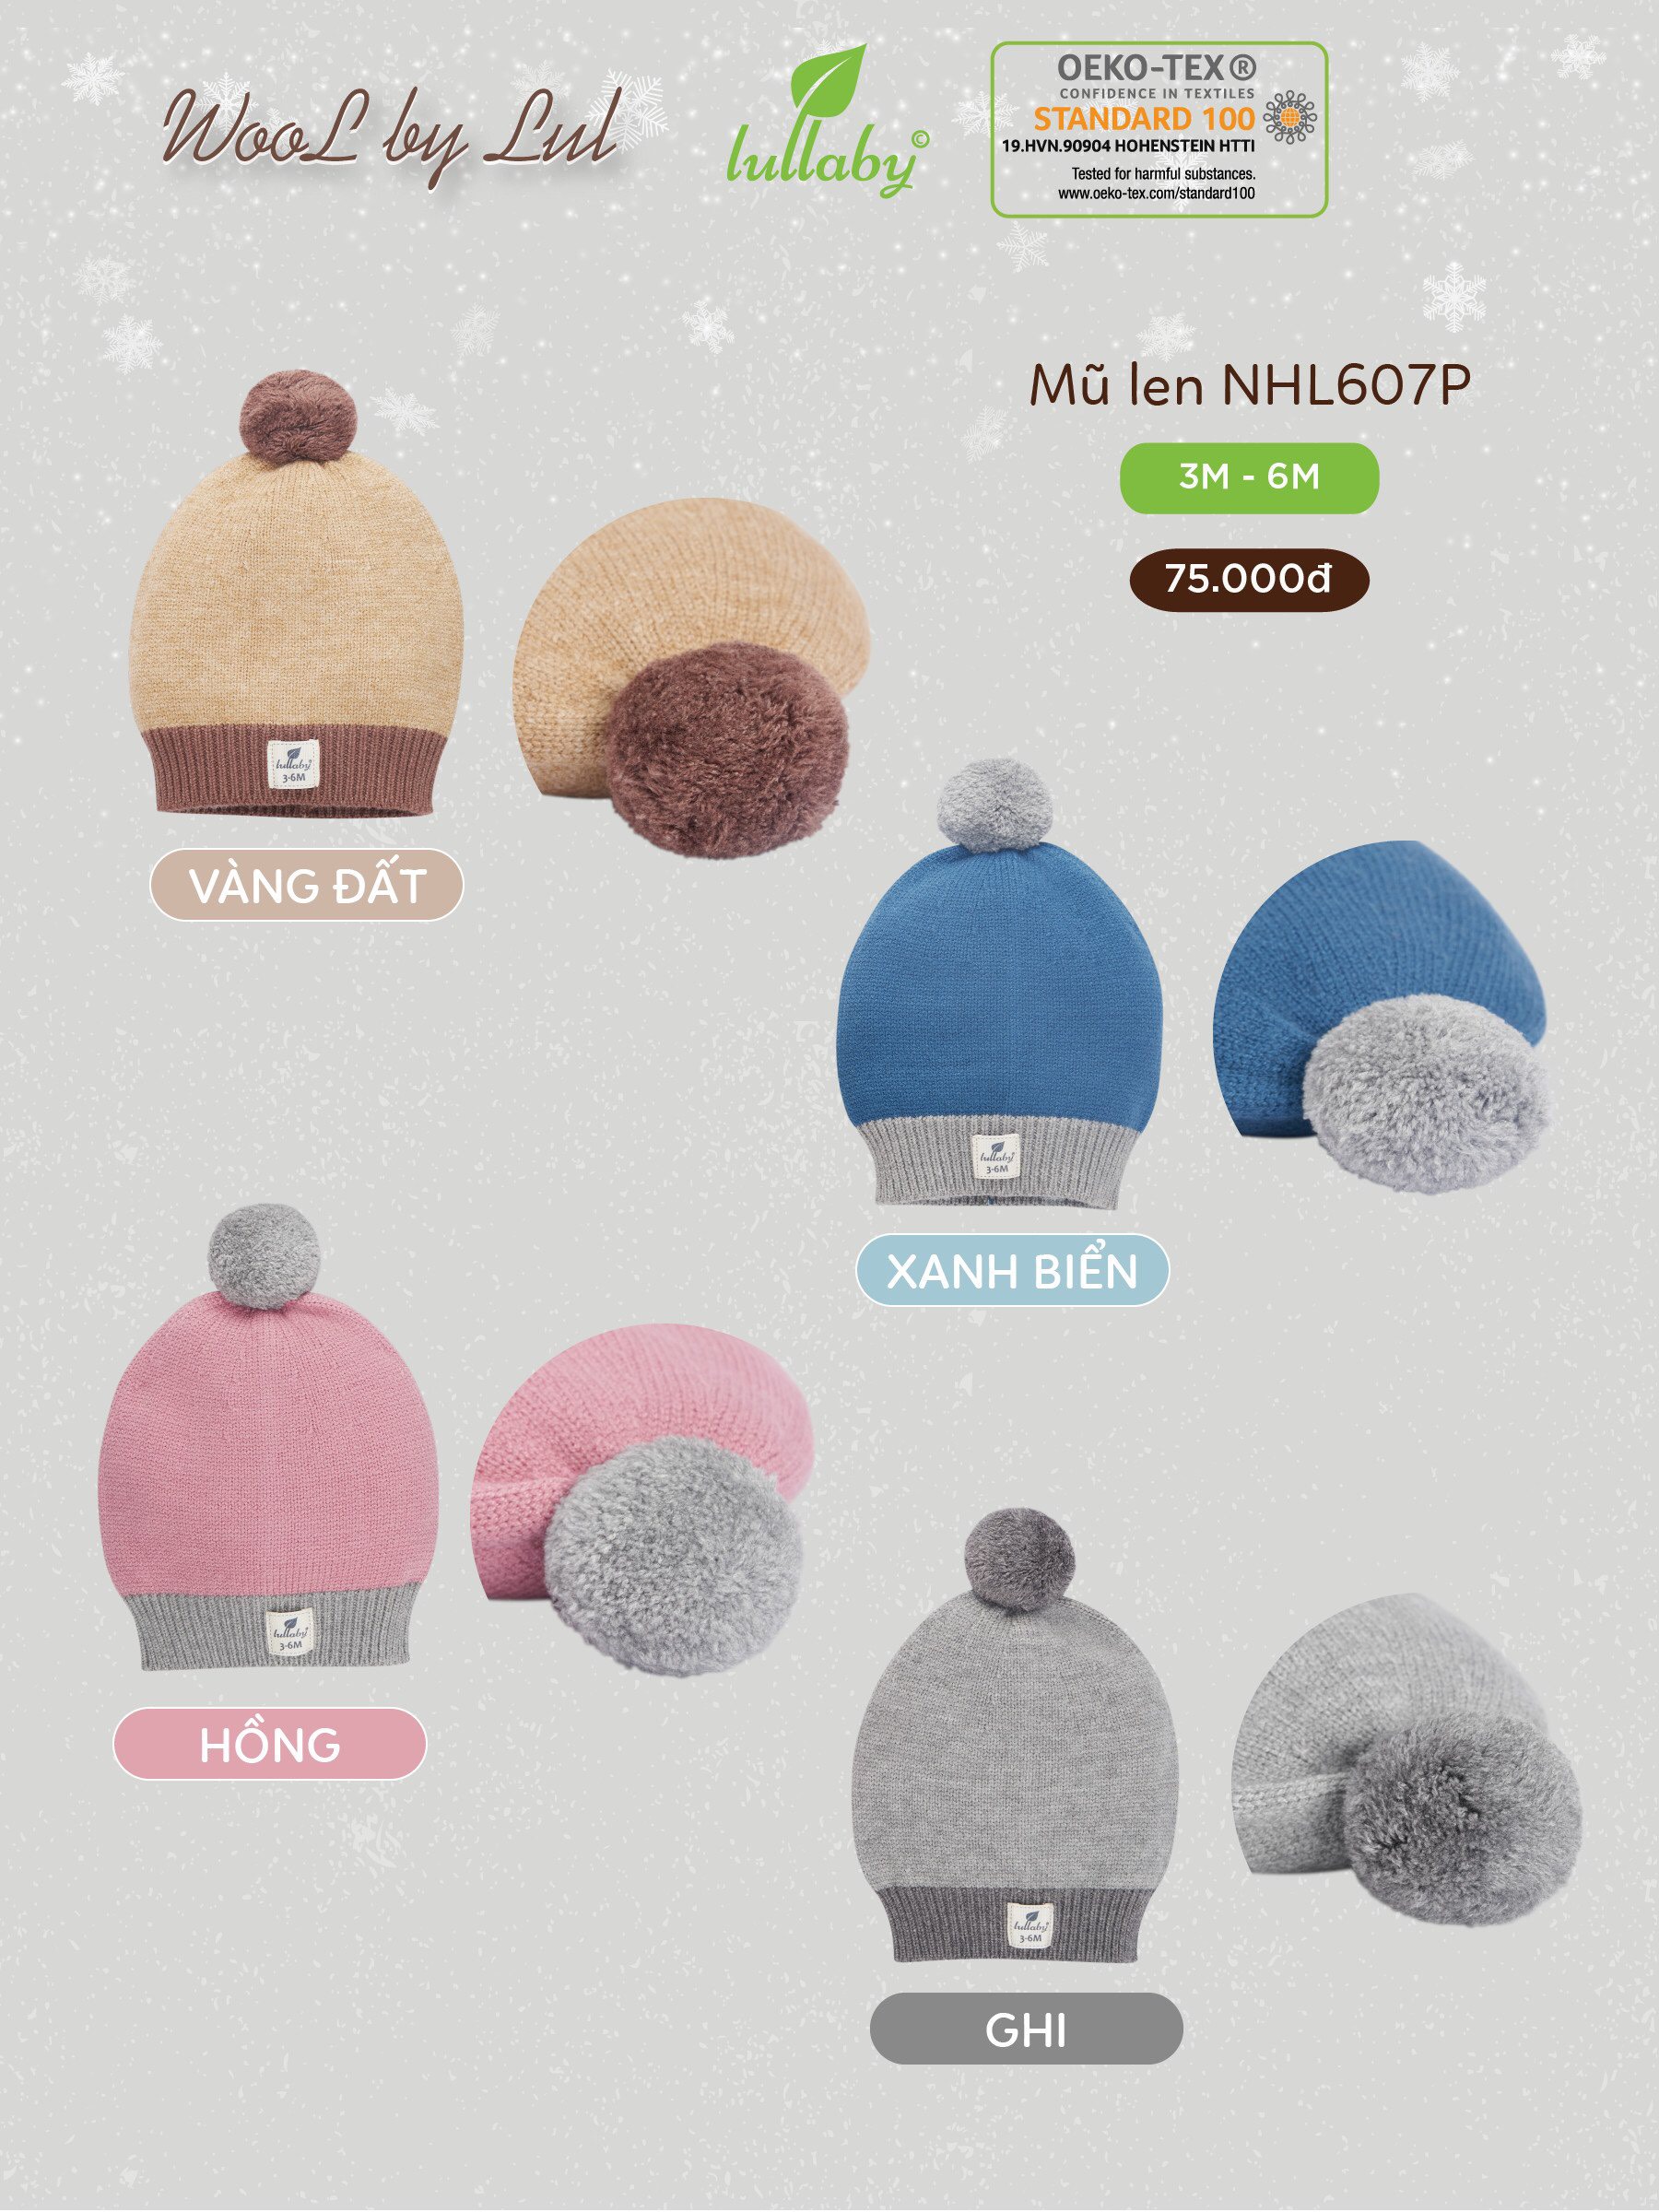 Mũ len sơ sinh Lullaby NHL607P, mũ nồi quả bông bằng len cotton siêu mềm mịn, hàng cao cấp